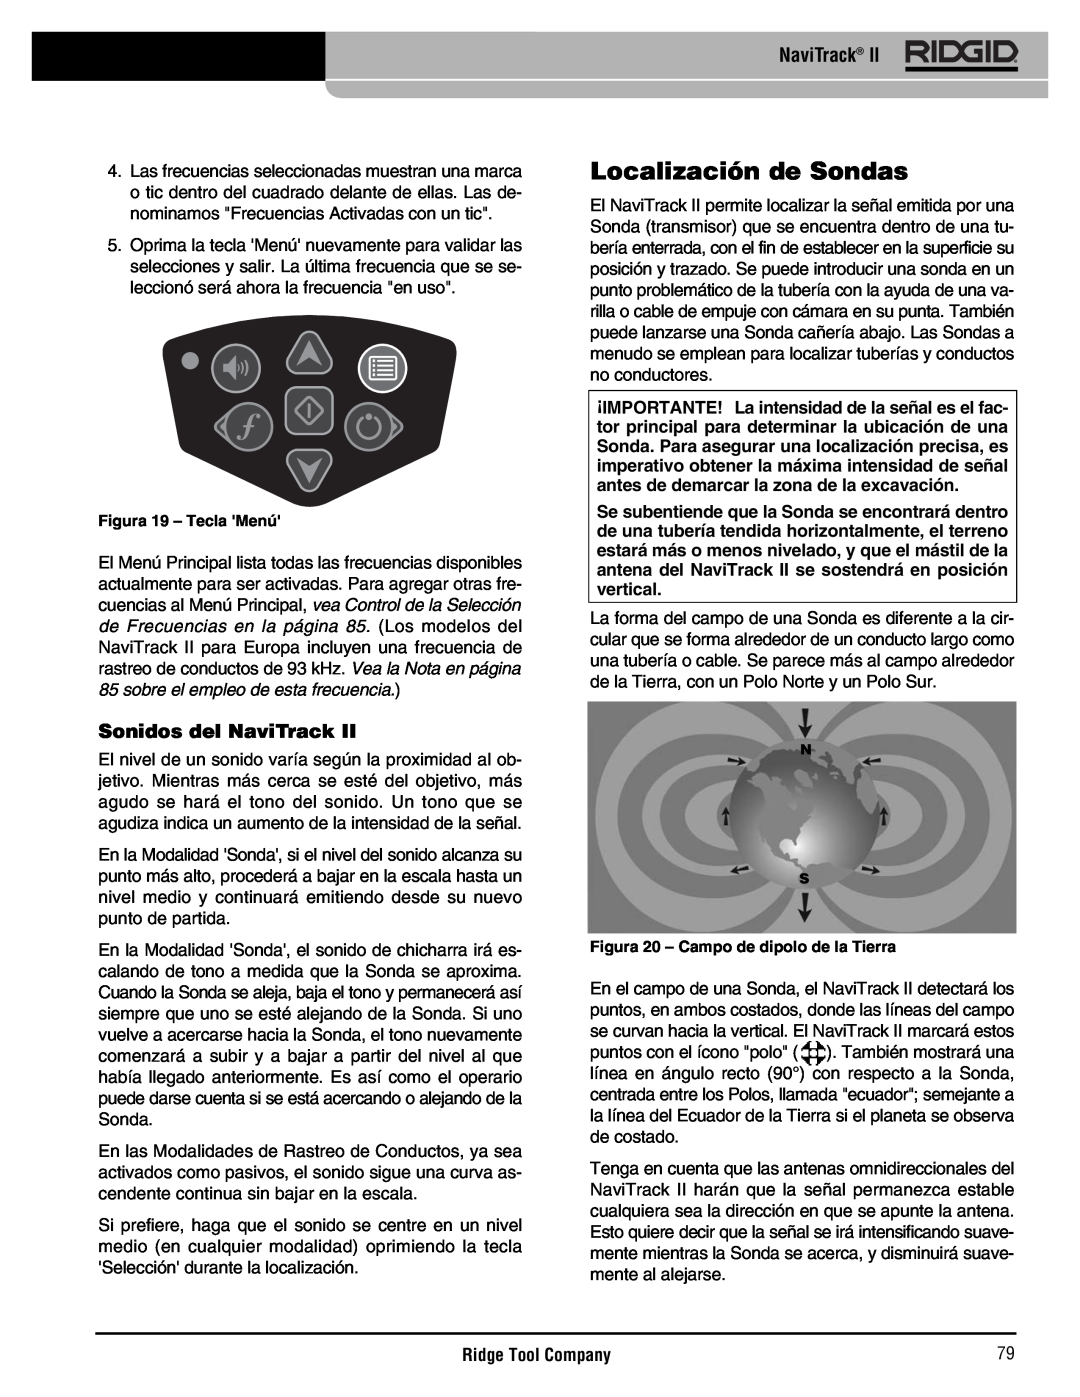 RIDGID Metal Detector manual Localización de Sondas, Sonidos del NaviTrack, Ridge Tool Company, Figura 19 - Tecla Menú 